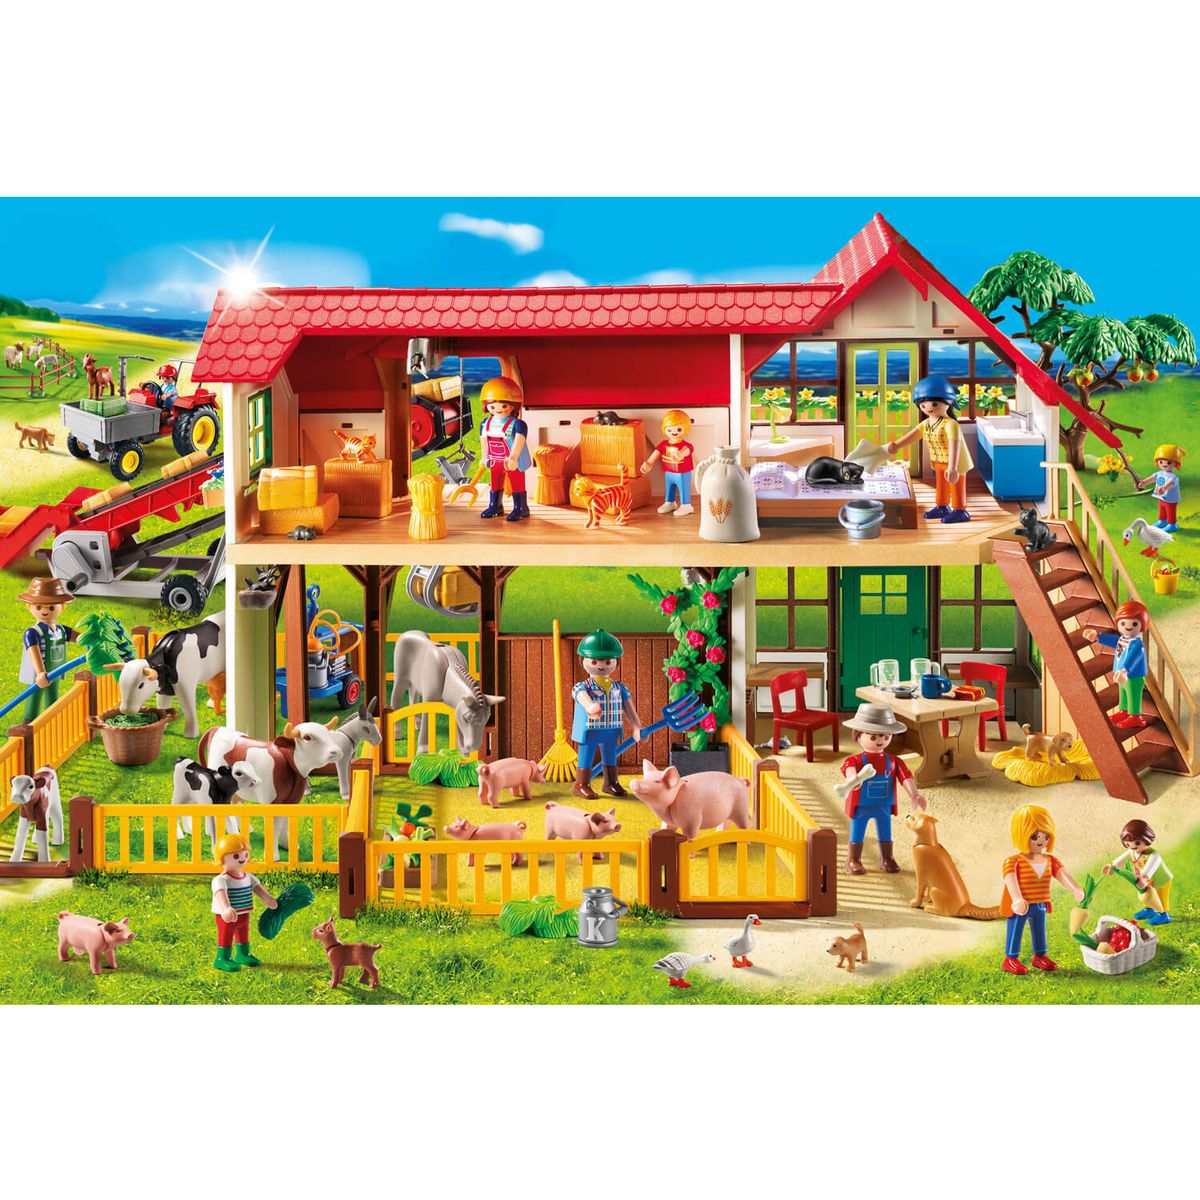 Schmidt Puzzle 100 pièces : La Ferme : Playmobil pas cher 